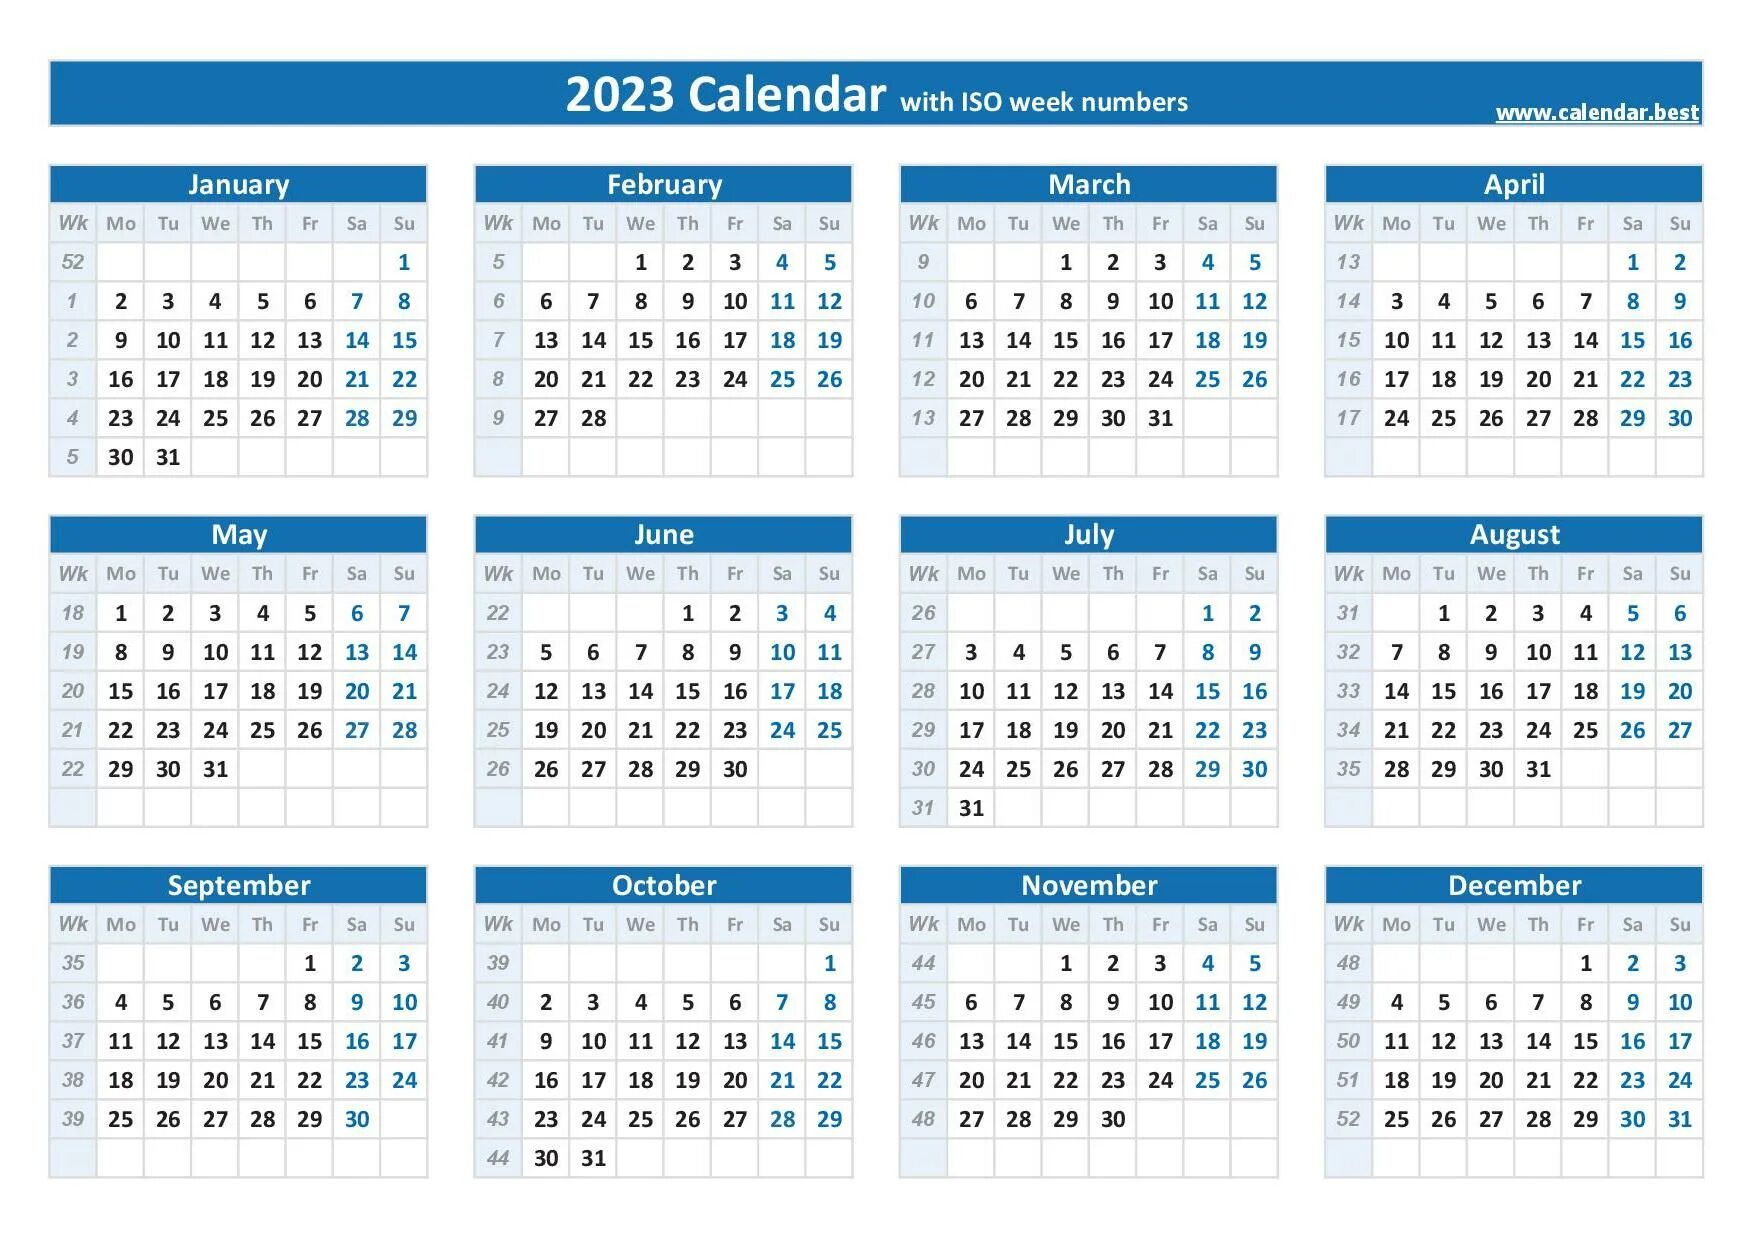 Календарь ISO 2022. Календарь 2023. Календарь 2023 with week numbers. Календарь на 2023 год.